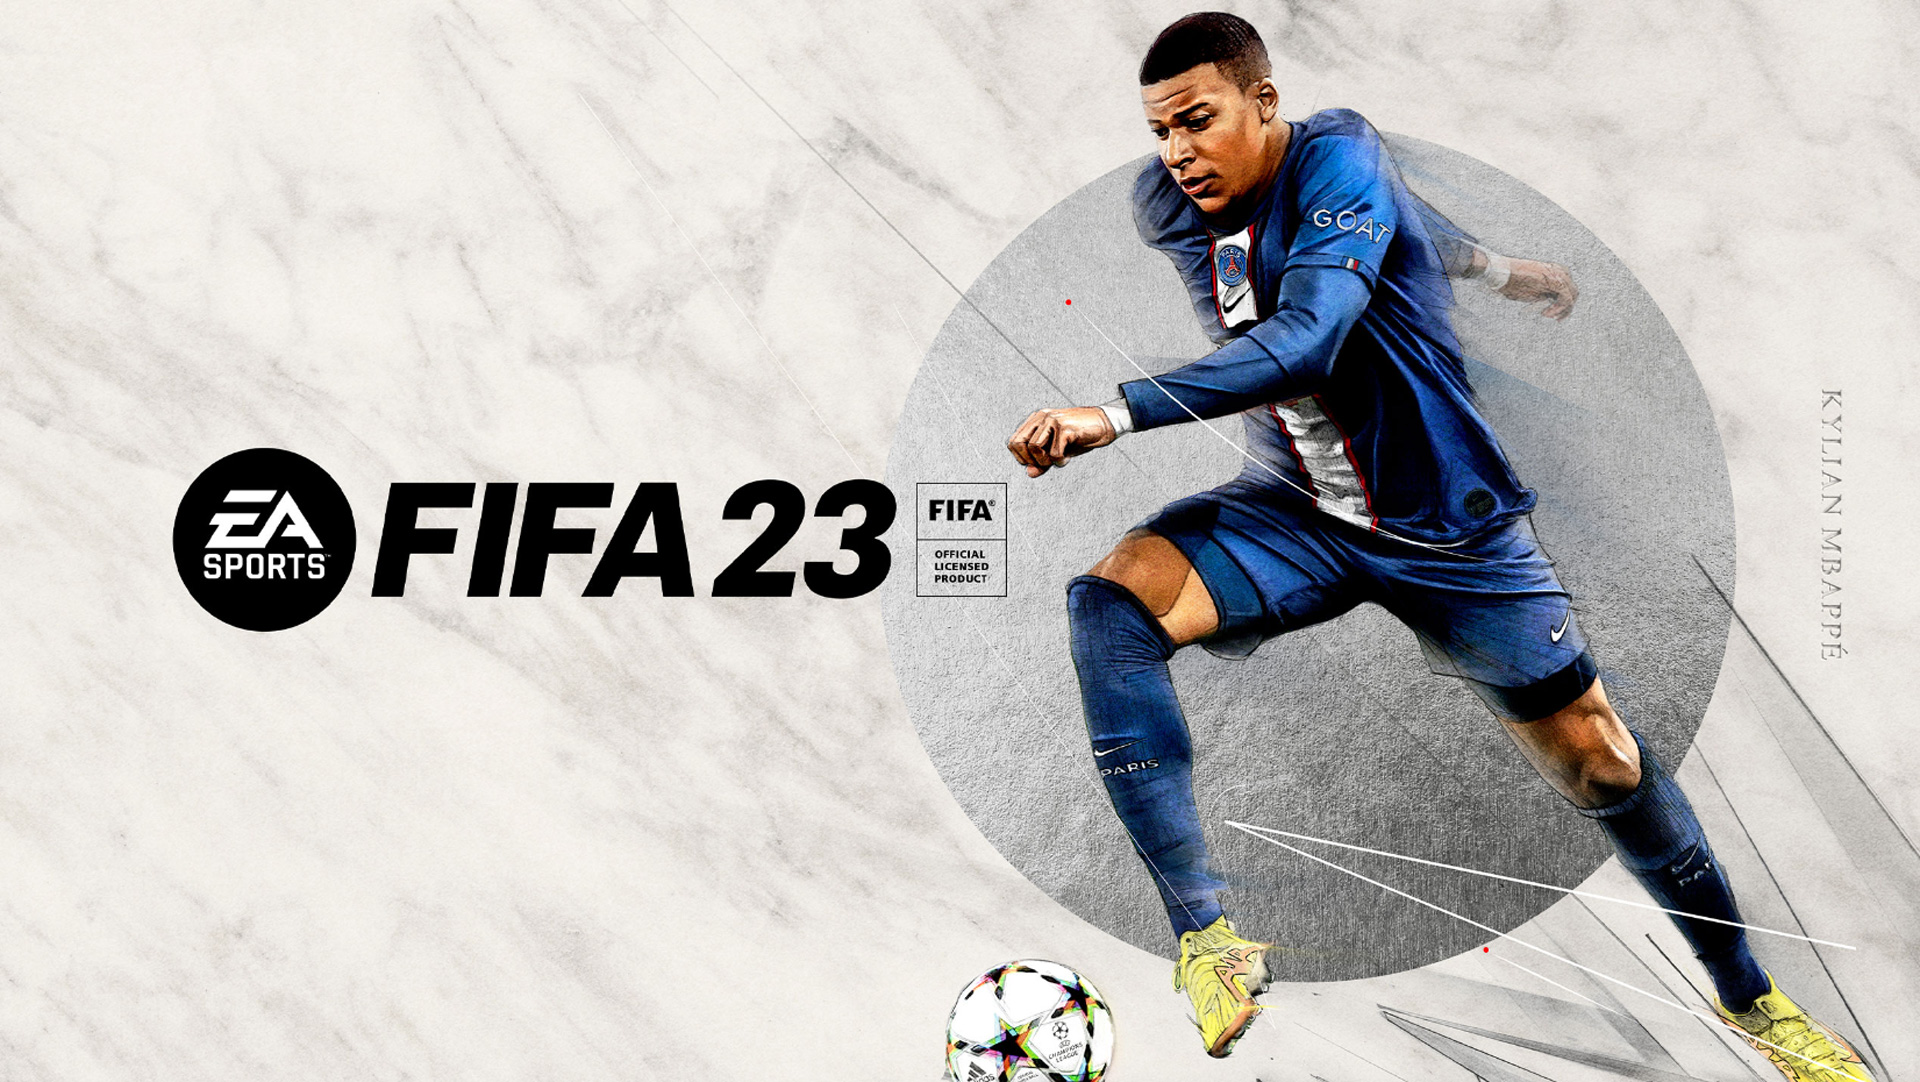 Divulgado o trailer de FIFA 23 The Matchday Experience